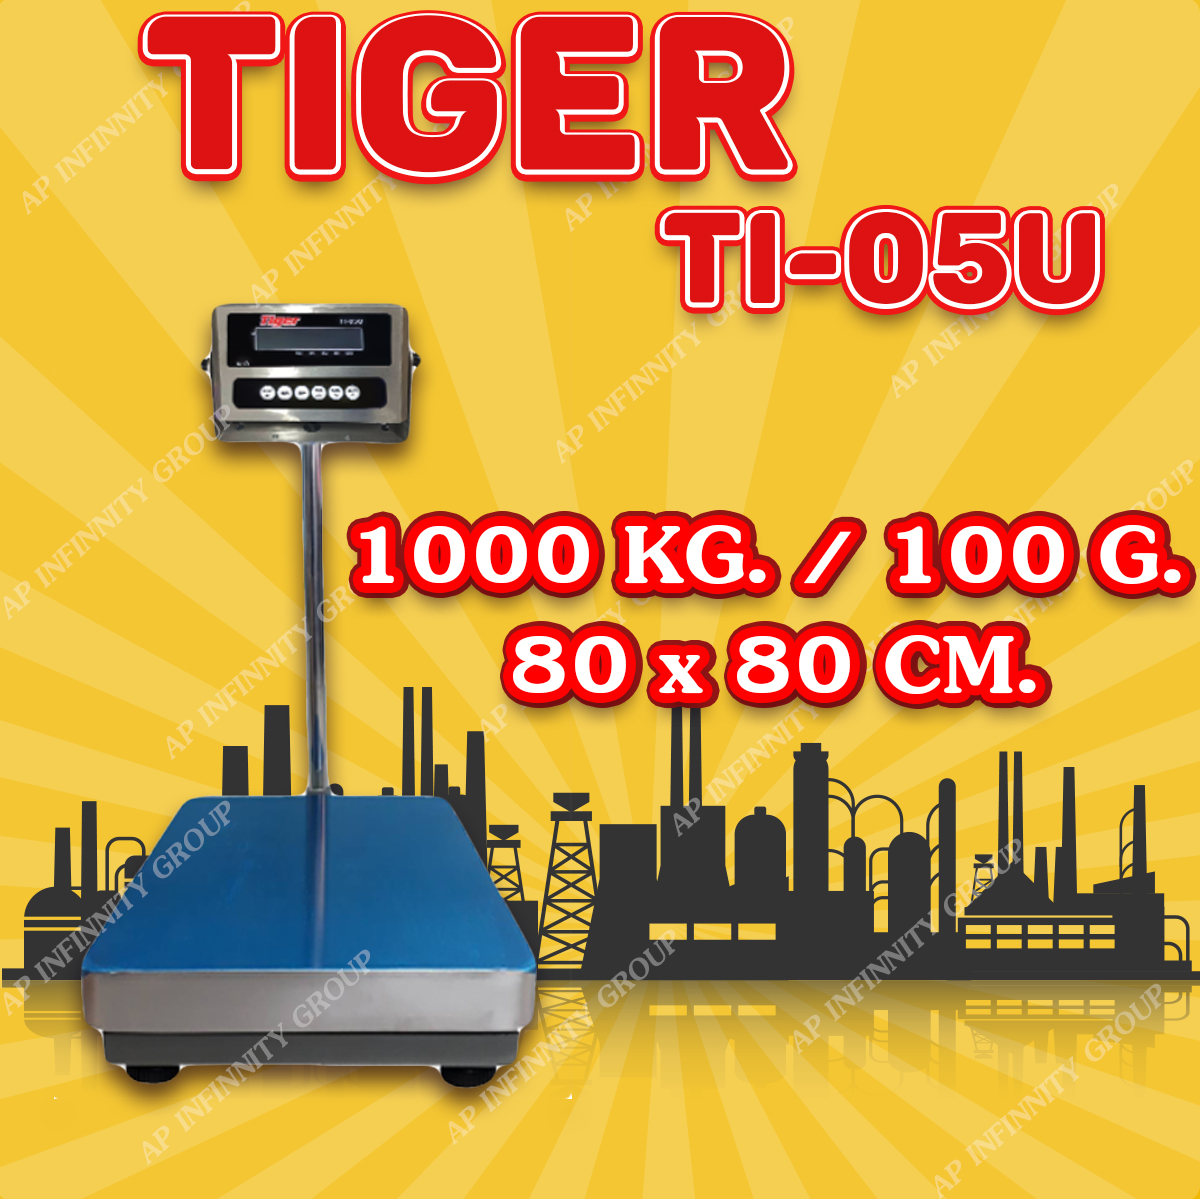 ตาชั่งดิจิตอล เครื่องชั่งดิจิตอล เครื่องชั่งตั้งพื้น 1000kg ความละเอียด 100g ยี่ห้อ Tiger รุ่น TI–05U แท่นชั่งขนาดฐาน 80x80cm มีช่อง USB สำหรับการบันทึกข้อมูลได้ รูปที่ 1